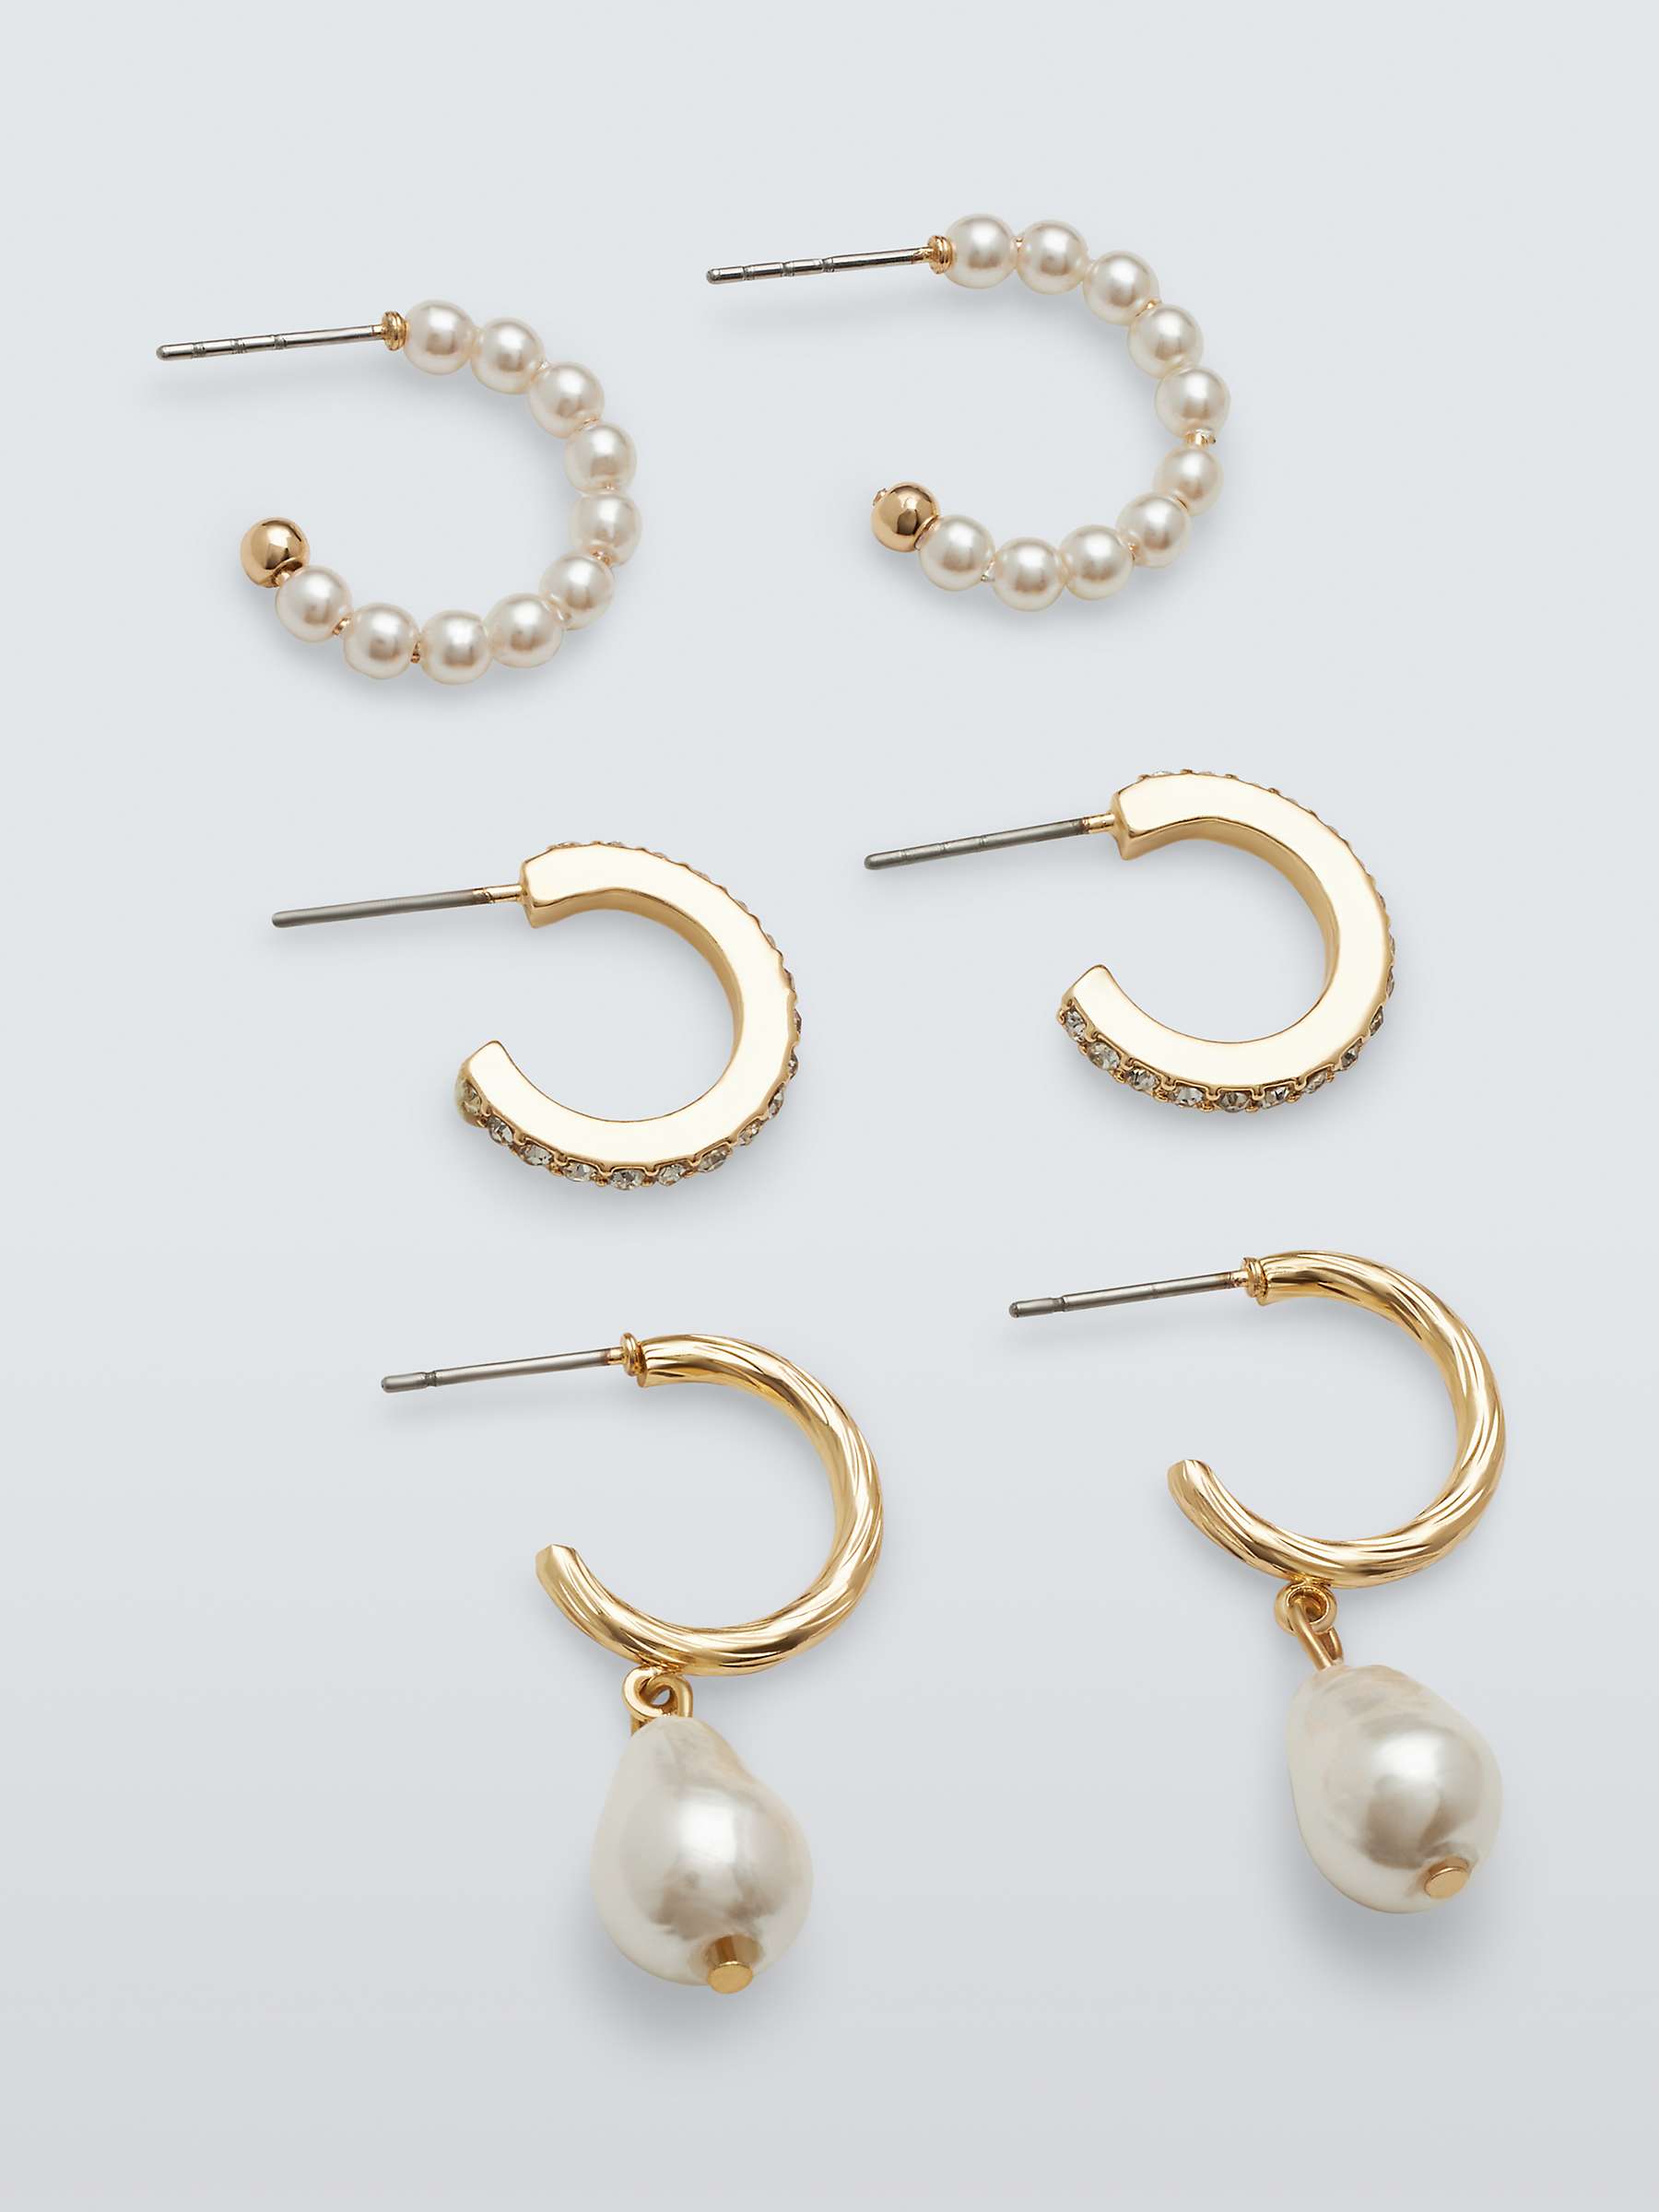 Buy John Lewis Faux Pearl and Crystal Mini Half Hoop Earrings, Set of 3 Pairs, Gold Online at johnlewis.com